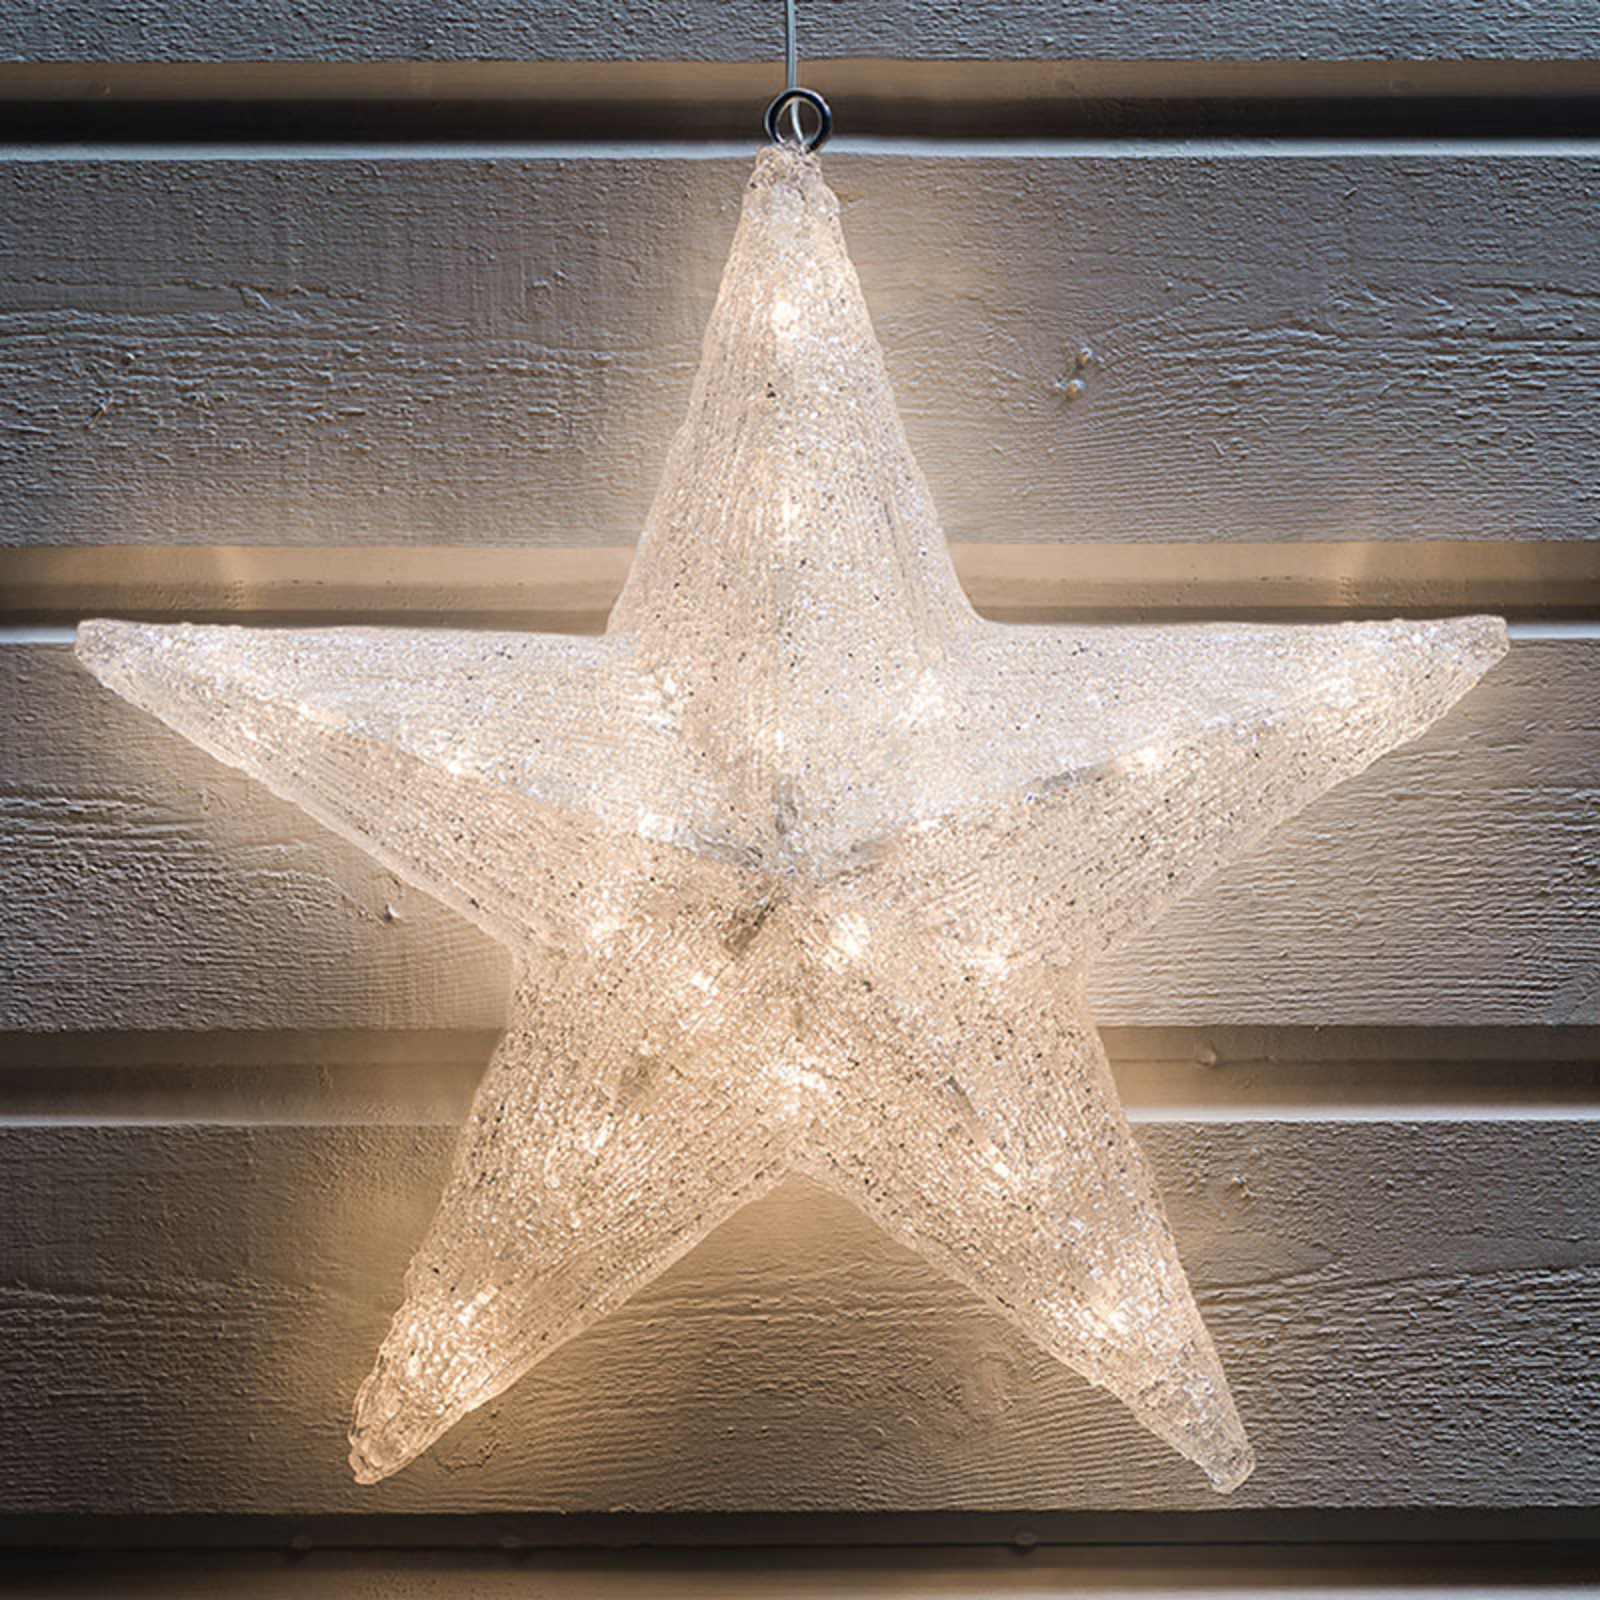 Dekoratívna hviezda LED na vonkajšie použitie, Ø 40 cm